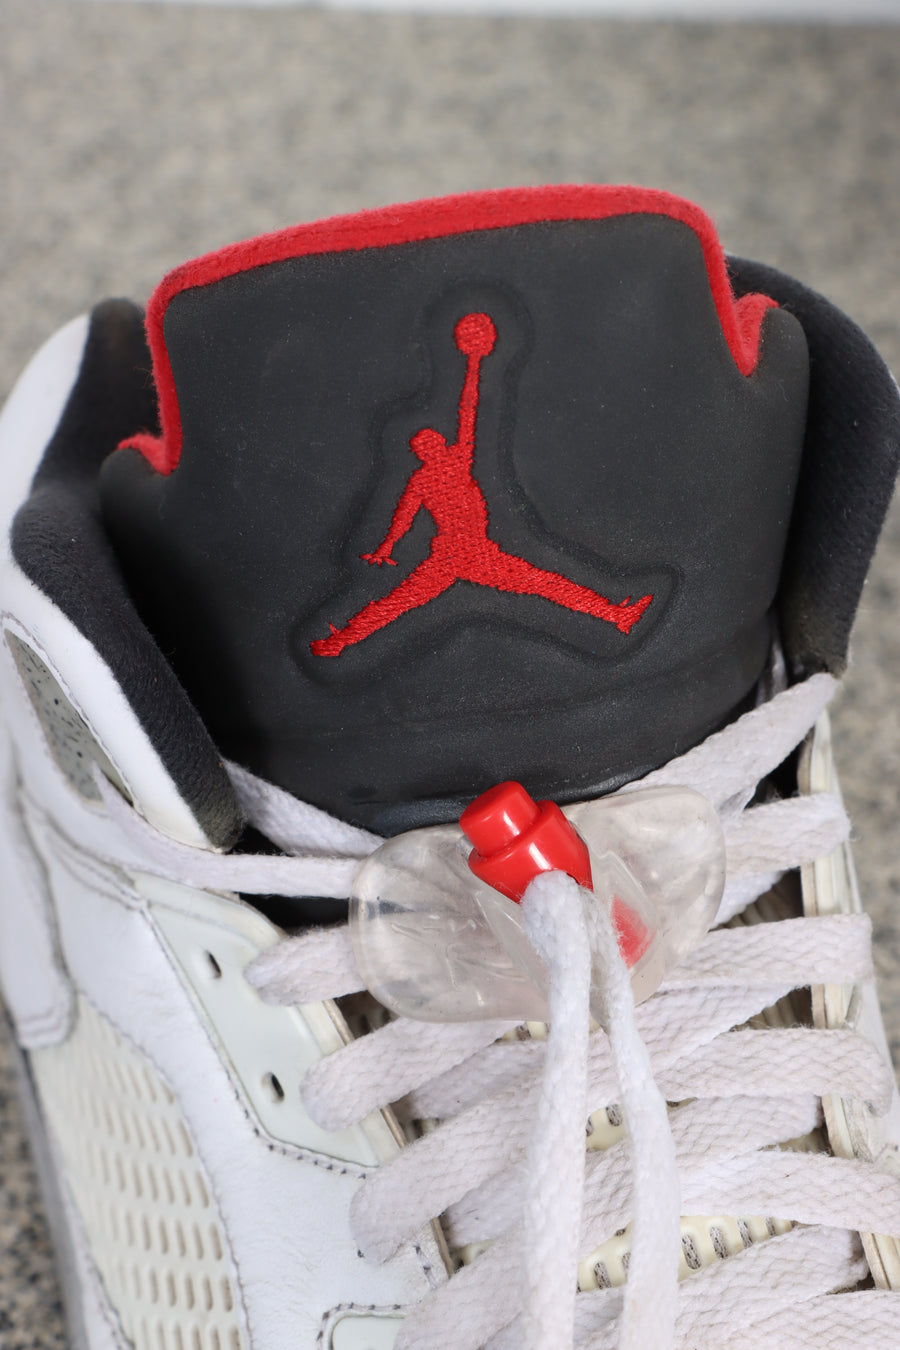 AIR JORDAN 5 'Retro White Cement' Sneakers (10)